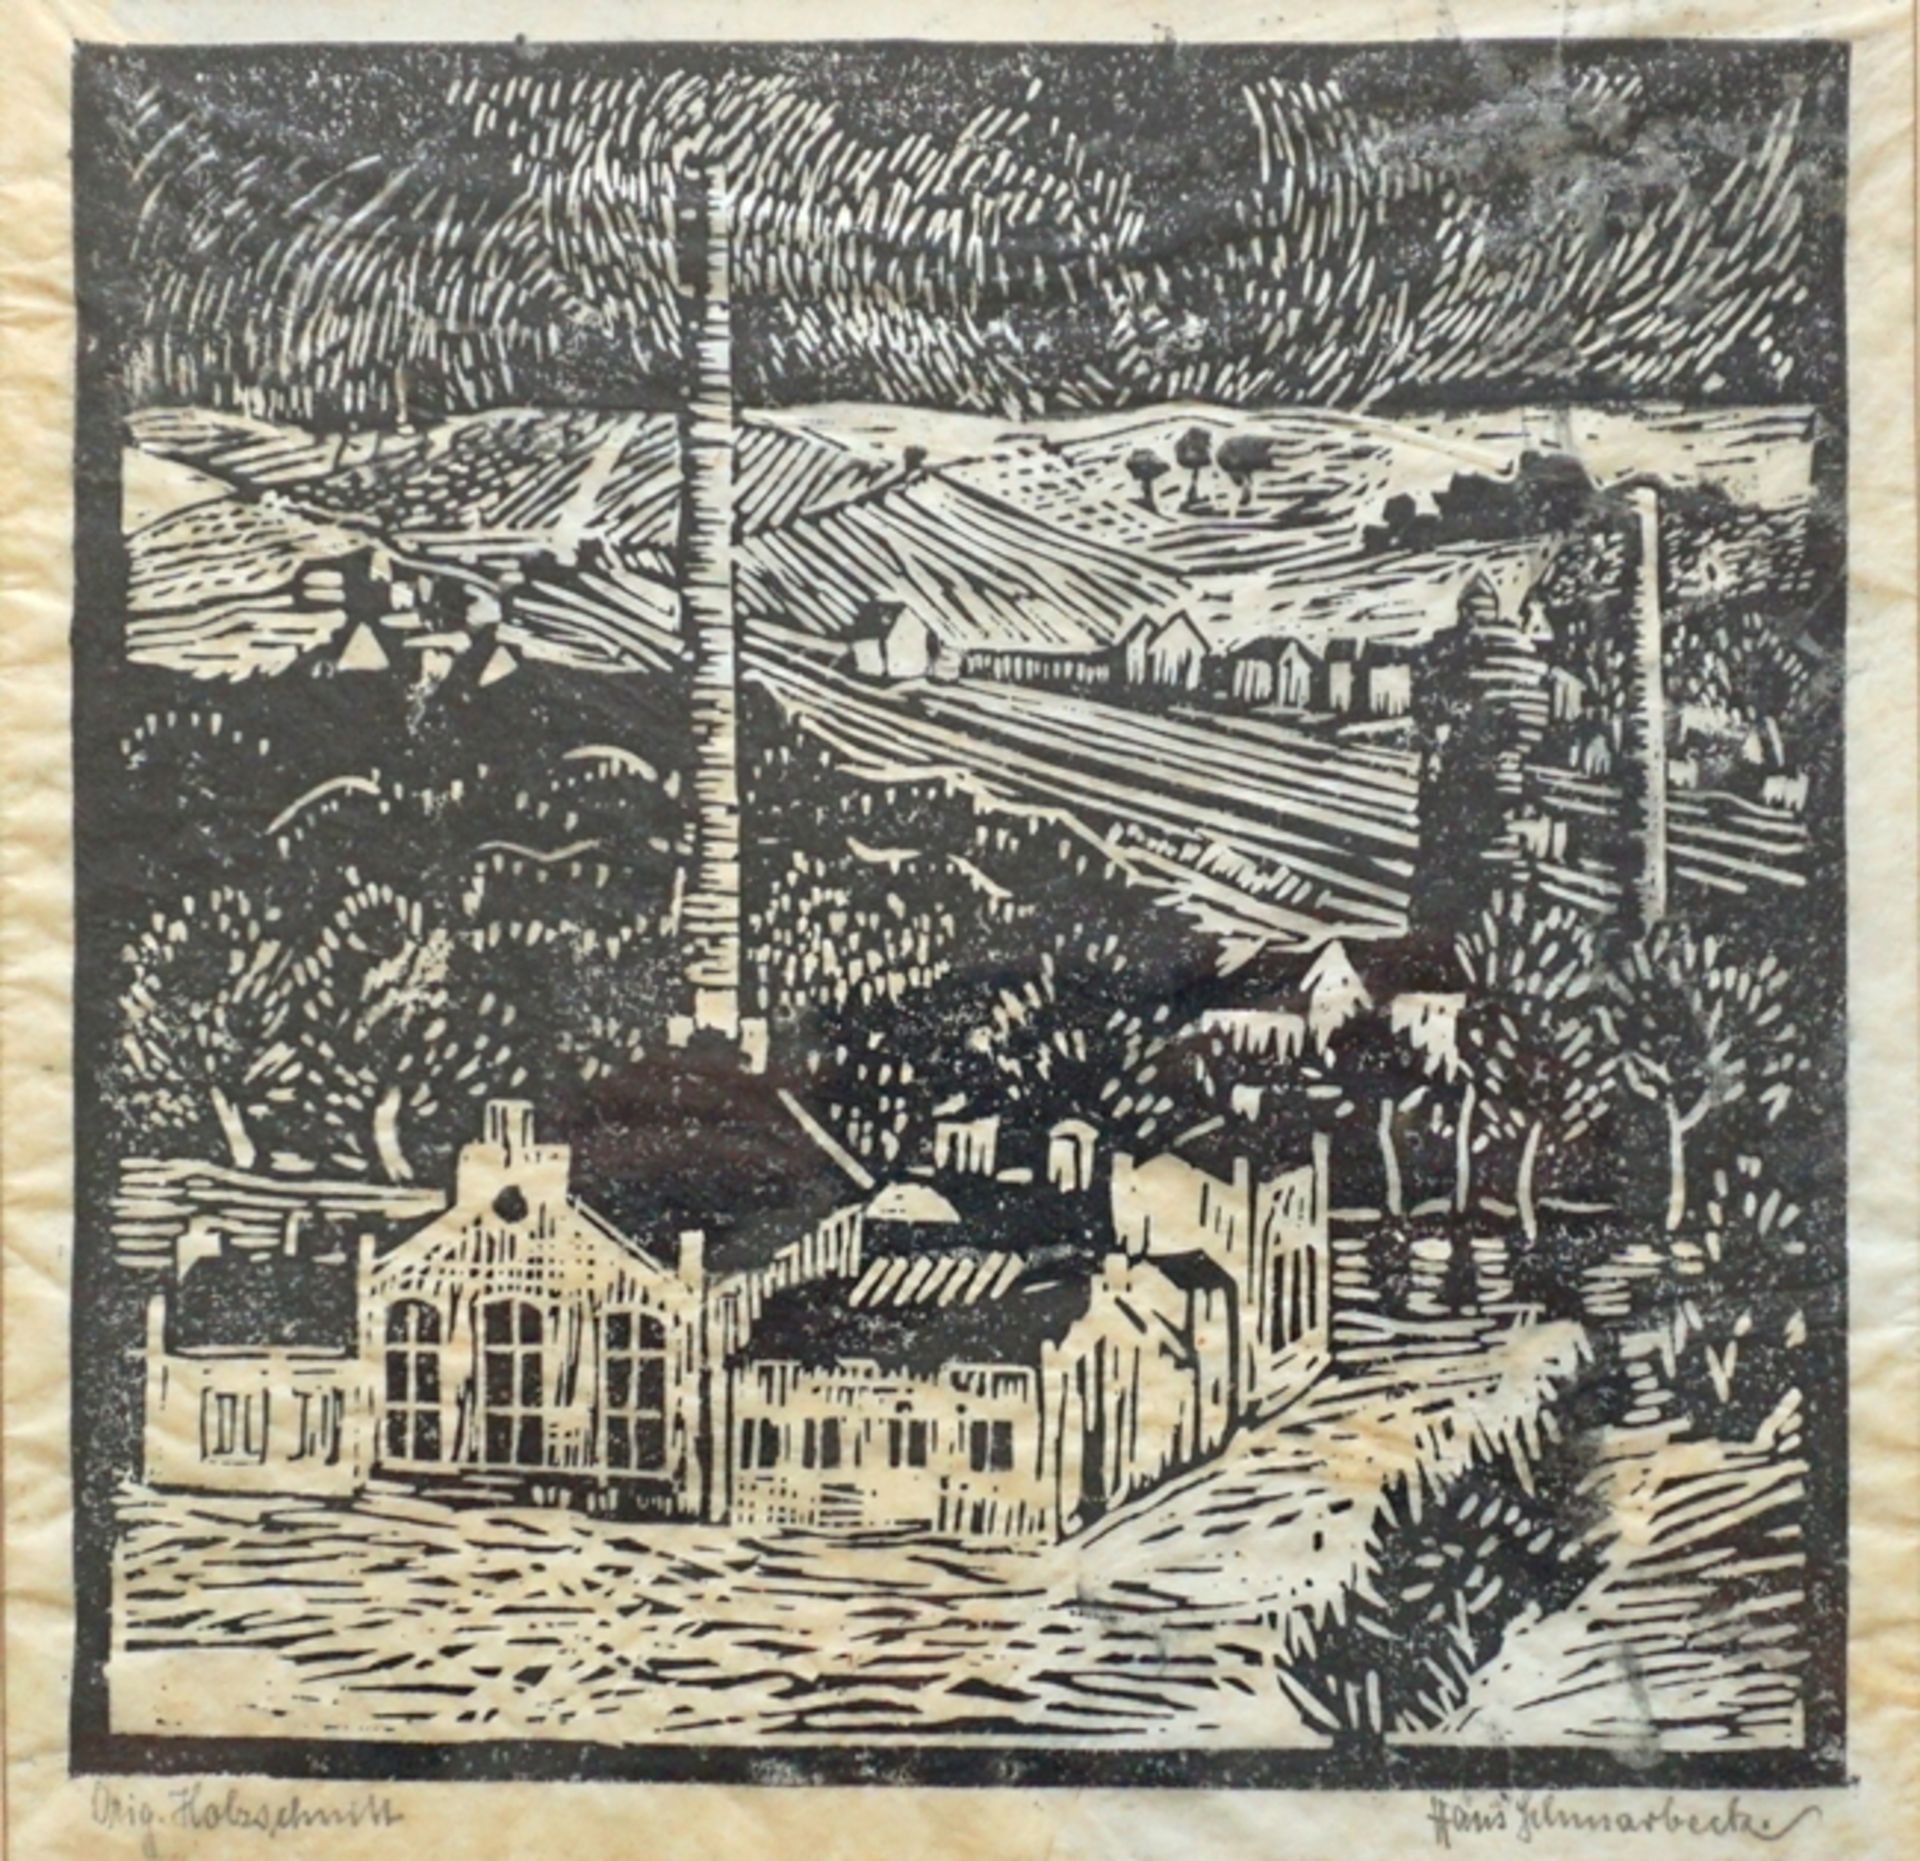 Hans Schmarbeck (?-1885, Norddeutschland), "Landschaft mit Industrieanlage", Holzschnitt